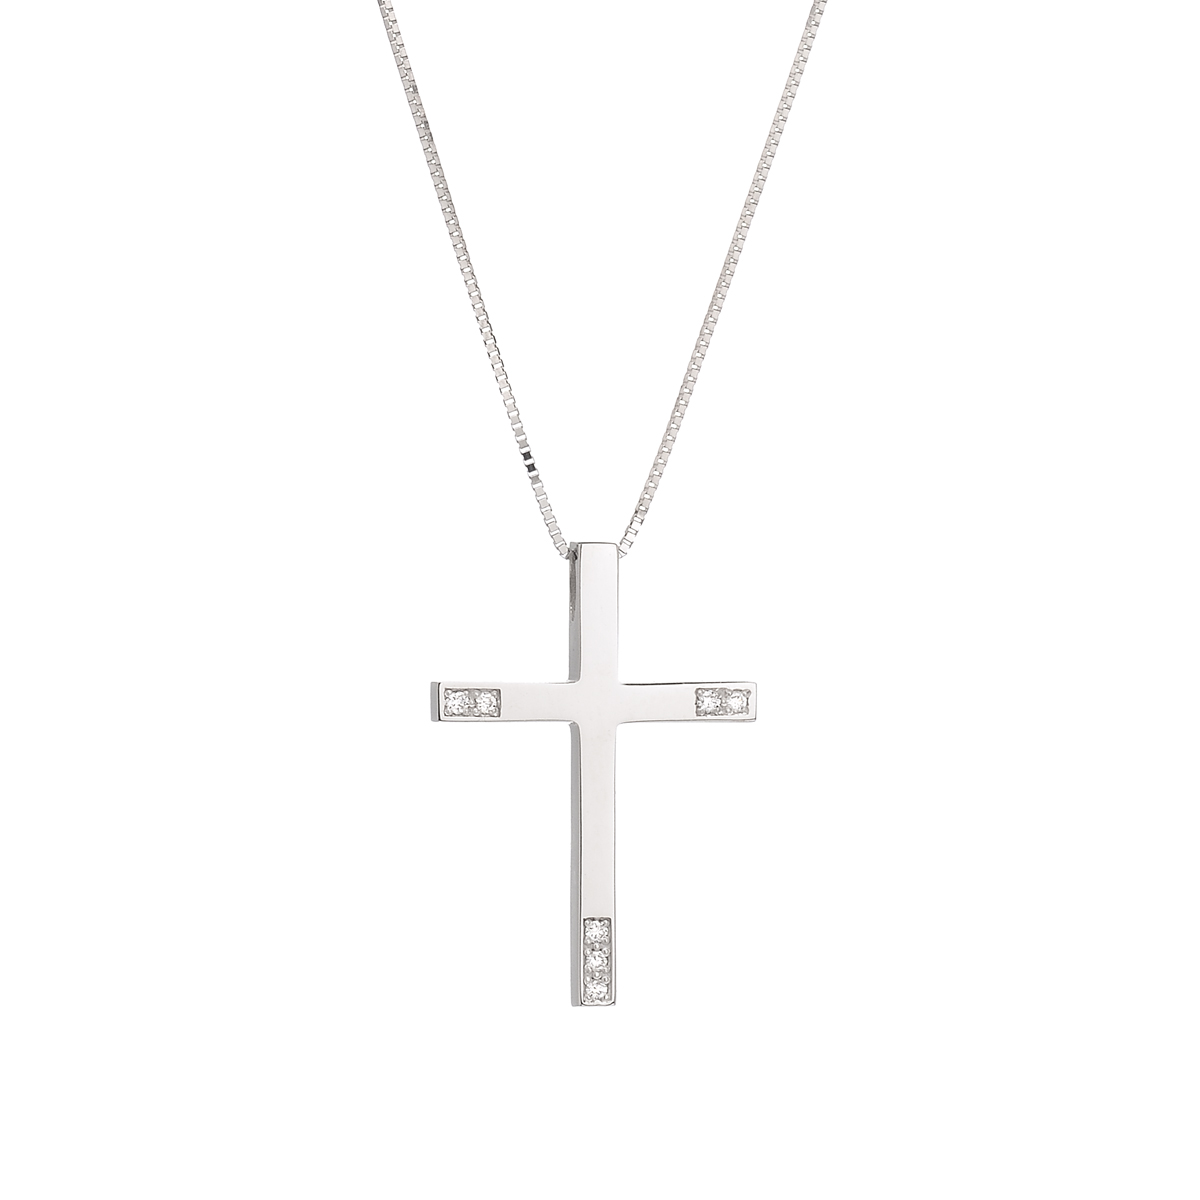 λευκοχρυσος βαπτιστικος σταυρος, διαμαντι και 18καρατια σταυρος για βαπτιση